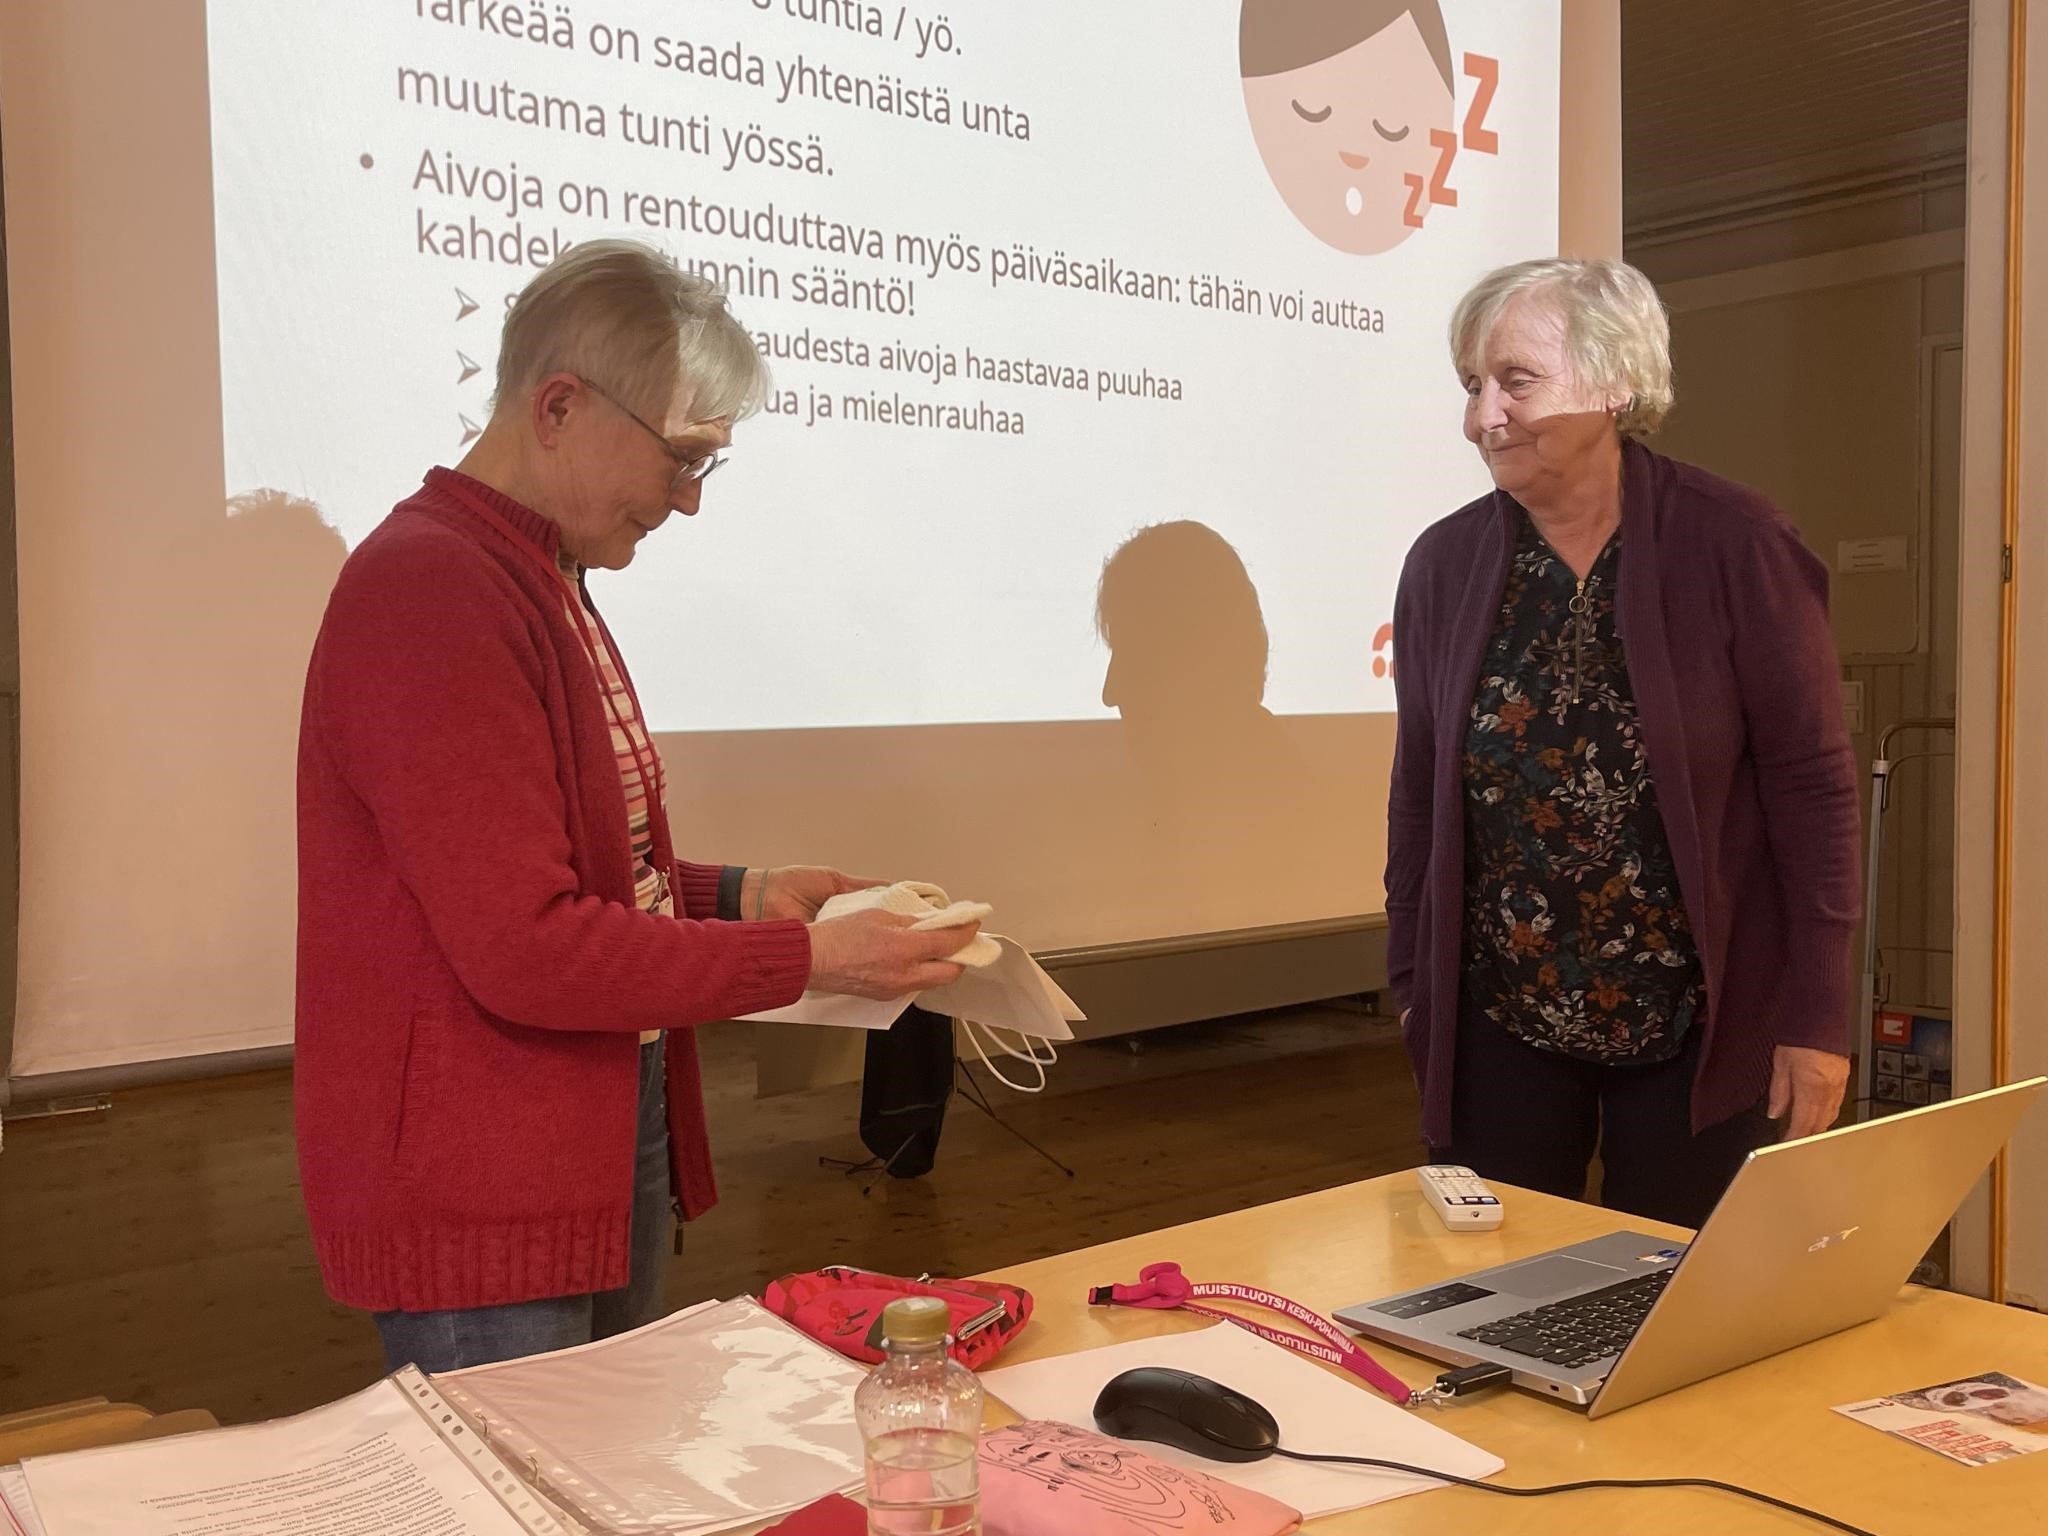 Muistoksi tilaisuudesta Pirjo-Riitta sai  Eläkeliiton logolla varustutut sukat, jotka ojensi Riitta-Liisa Kankkonen.